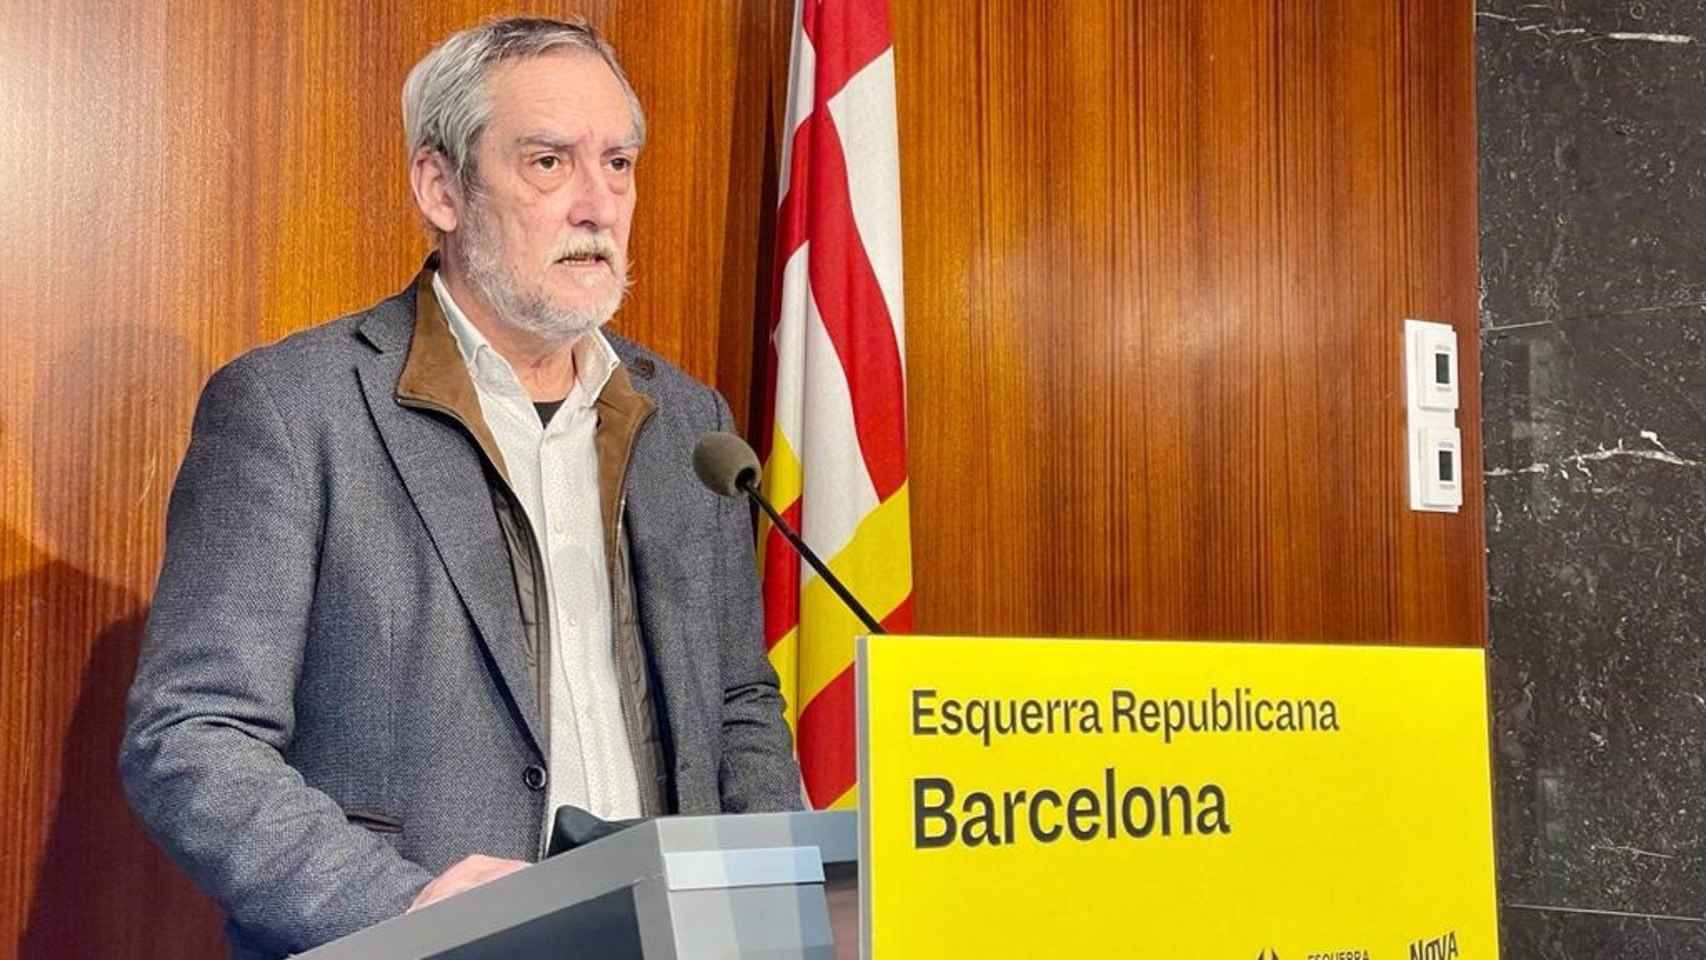 El portavoz de ERC en Barcelona, Jordi Coronas culpa a Colau de su incompetencia en Ciutat Vella / EUROPA PRESS